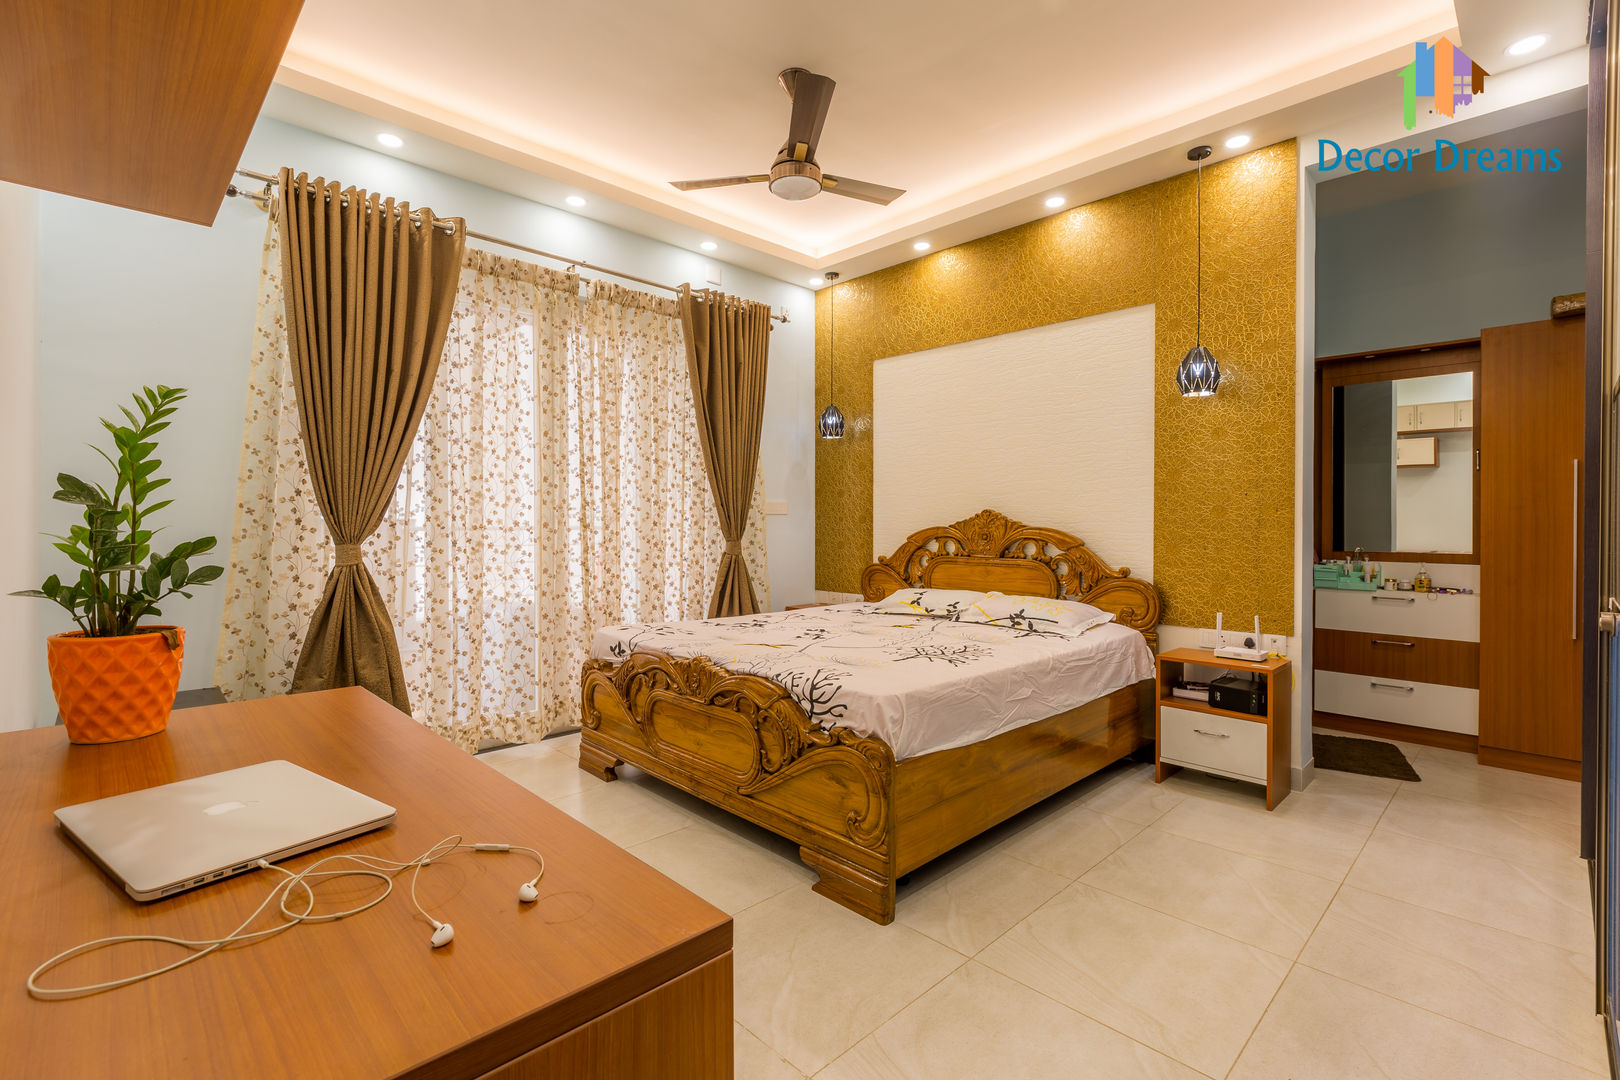 Vaishnavi Terraces, 3 BHK - Ms. Supriya, DECOR DREAMS DECOR DREAMS Dormitorios modernos